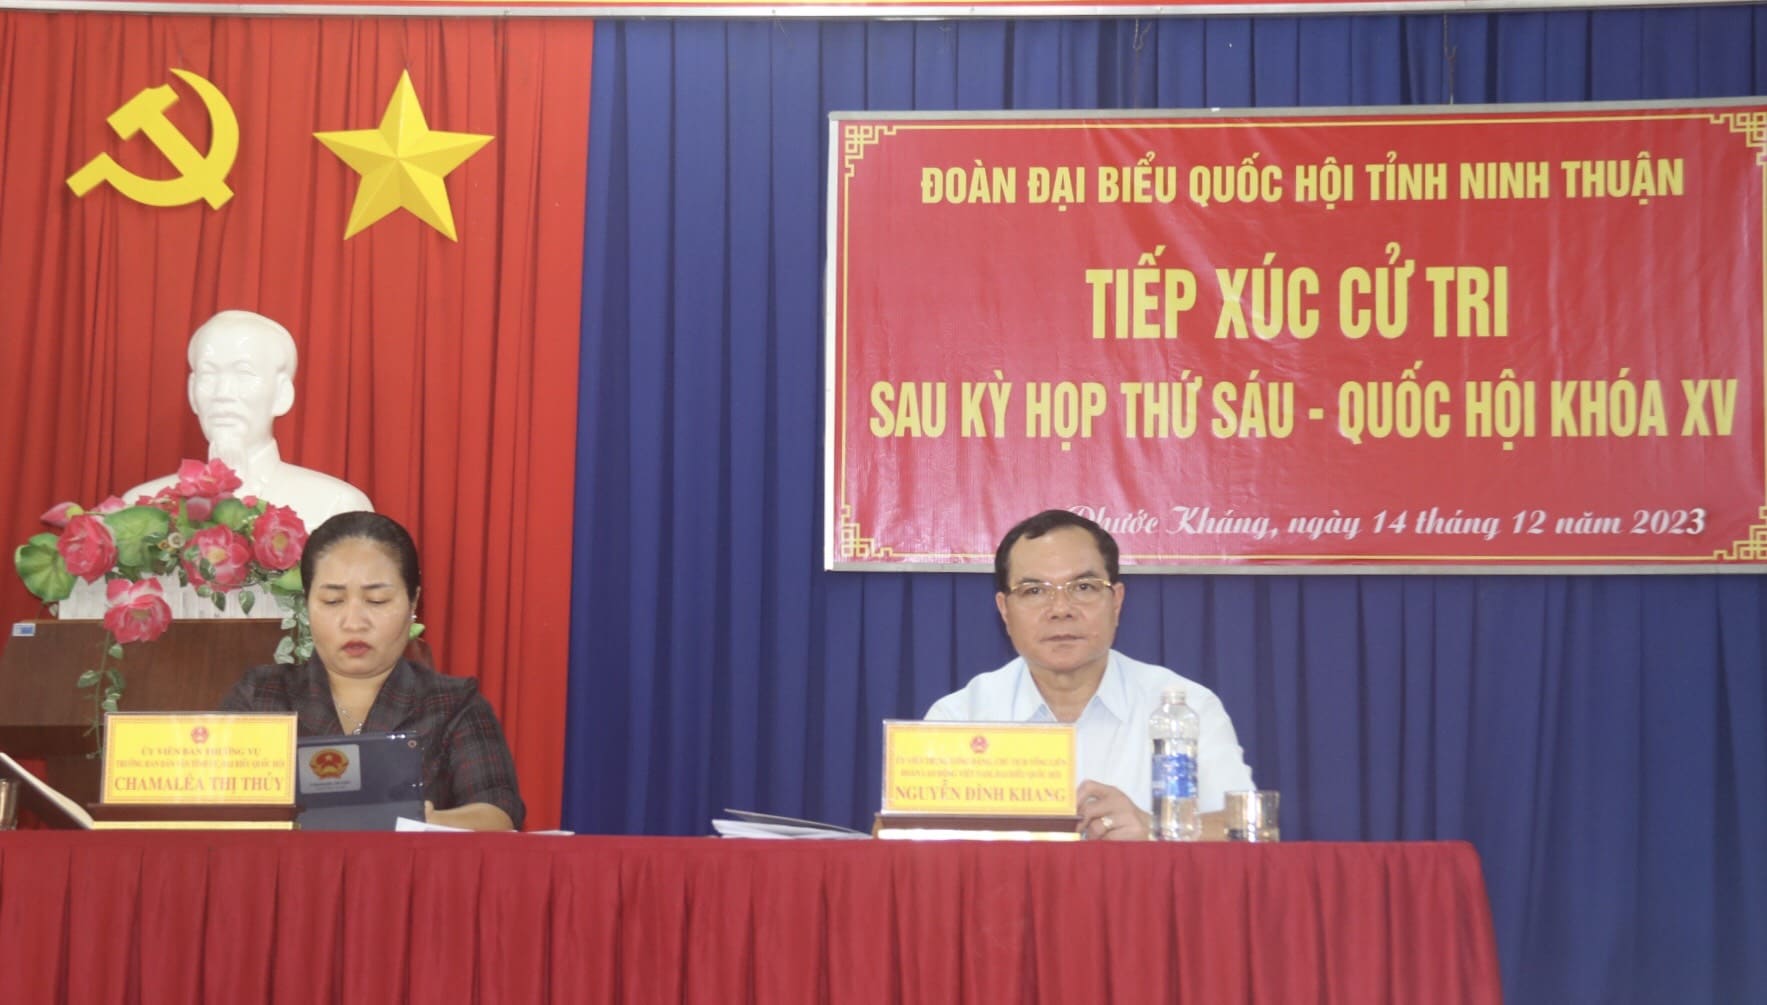 Đoàn đại biểu Quốc hội tỉnh Ninh Thuận tiếp xúc cử tri xã Phước Kháng sau Kỳ họp thứ 6 Quốc hội khóa XV. Ảnh: Thanh Thúy